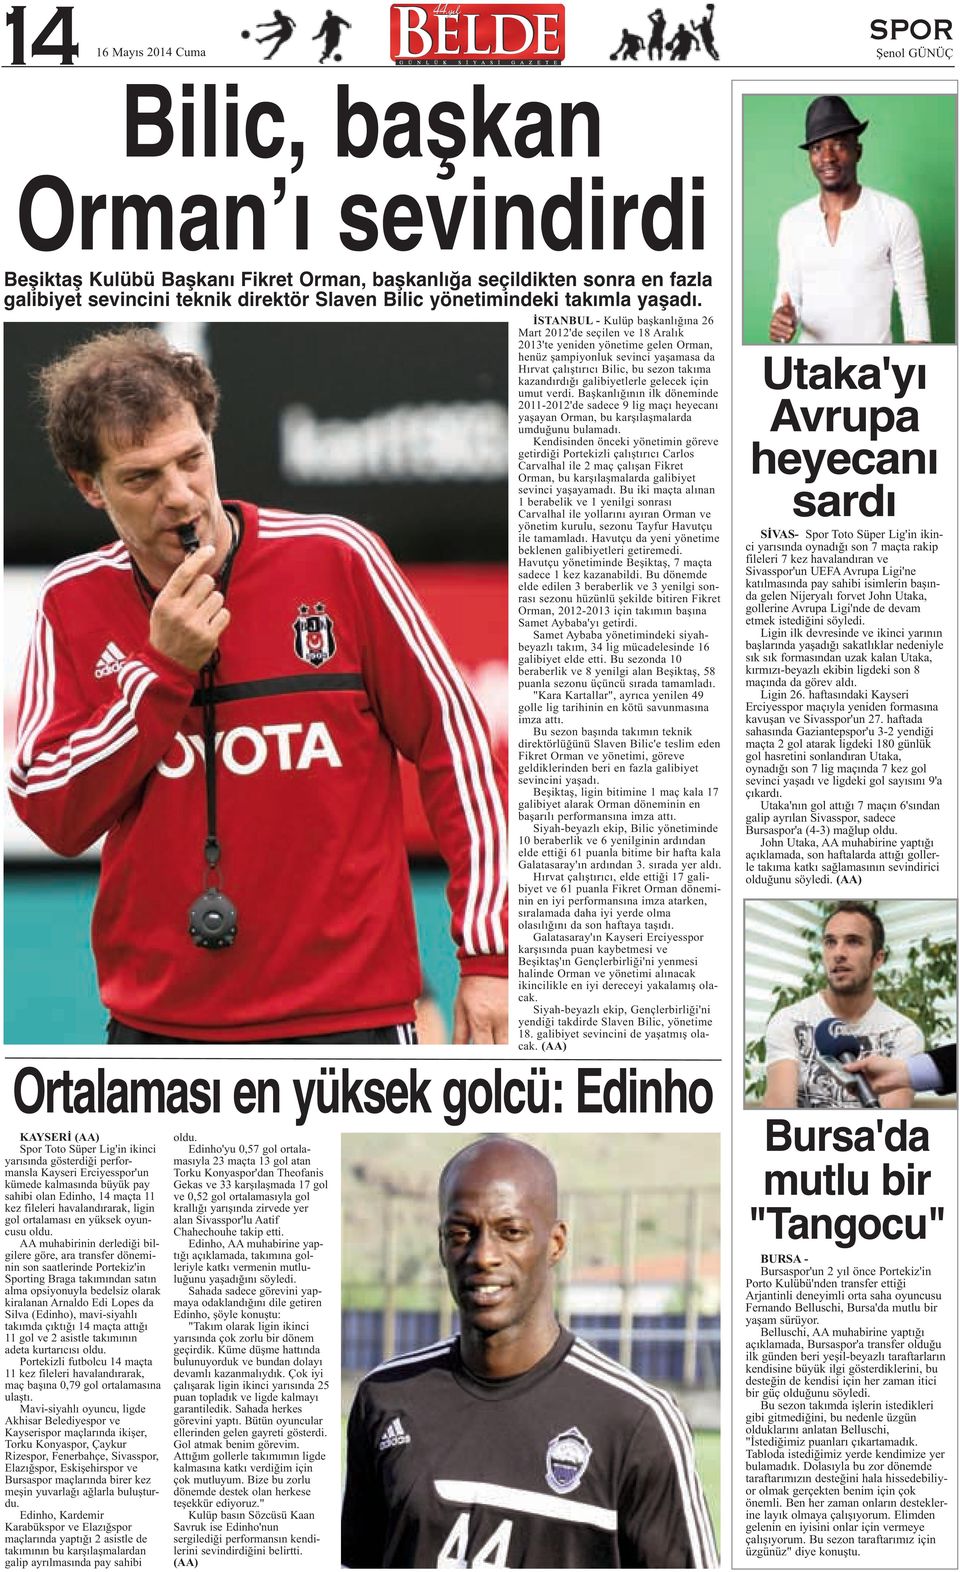 İSTANBUL - Kulüp başkanlığına 26 Mart 2012'de seçilen ve 18 Aralık 2013'te yeniden yönetime gelen Orman, henüz şampiyonluk sevinci yaşamasa da Hırvat çalıştırıcı Bilic, bu sezon takıma kazandırdığı